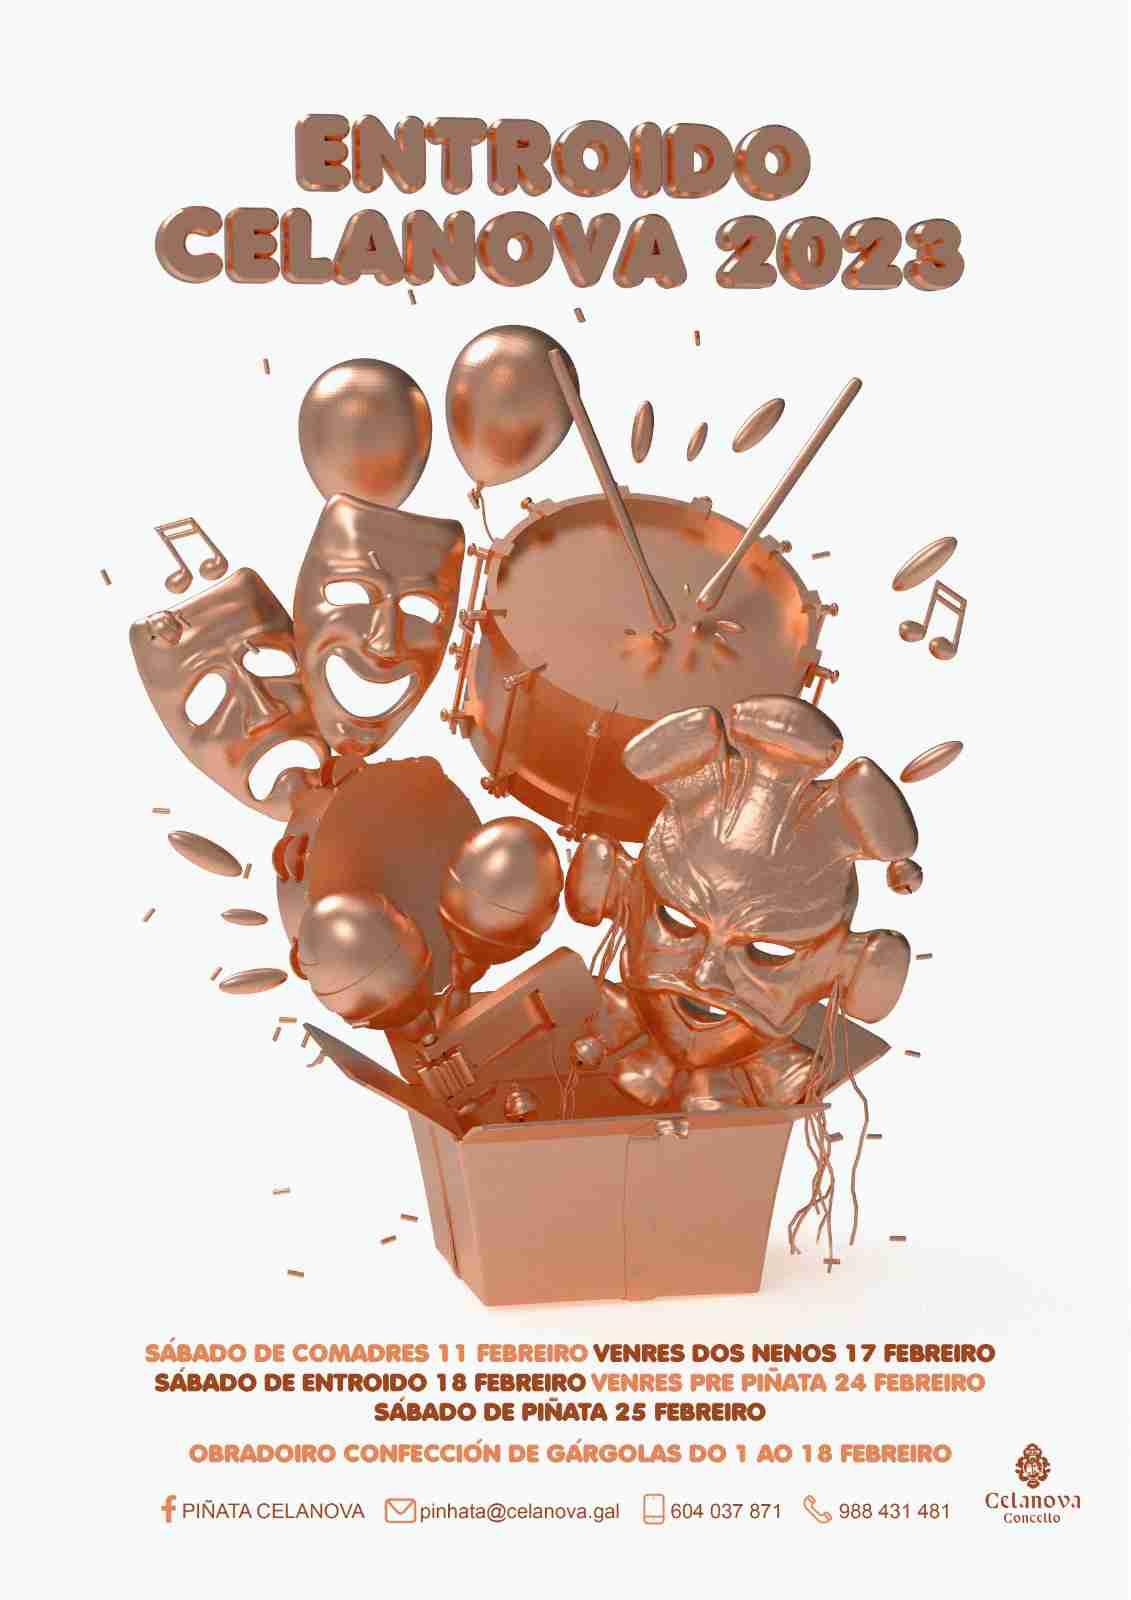 Carnaval Celanova 2023 - Formulario de inscripción para el sábado de PIÑATA